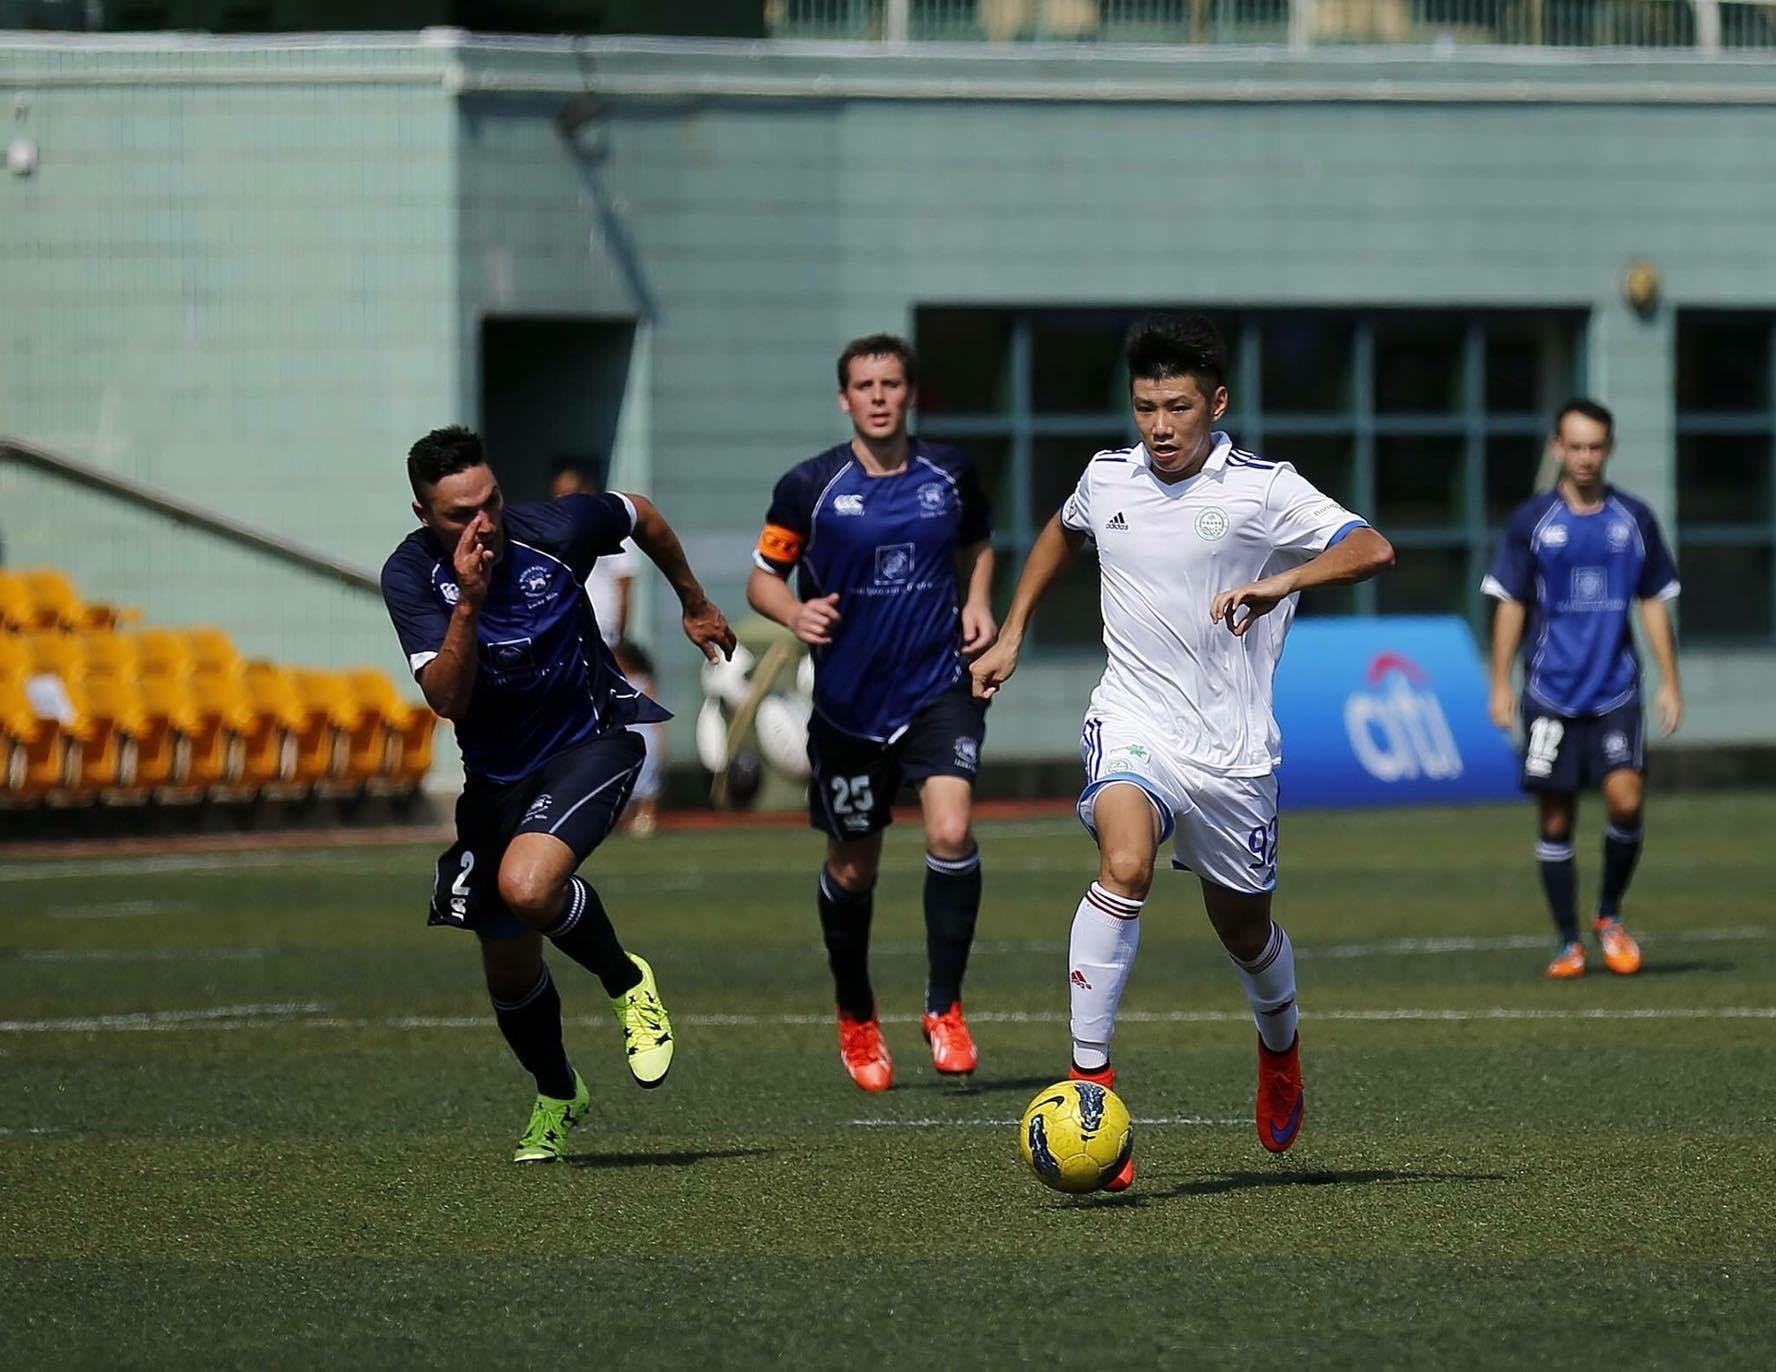 Leong Ka Hang | Único jogador profissional local chinês: “Faltam condições a ser atleta profissional em Macau”